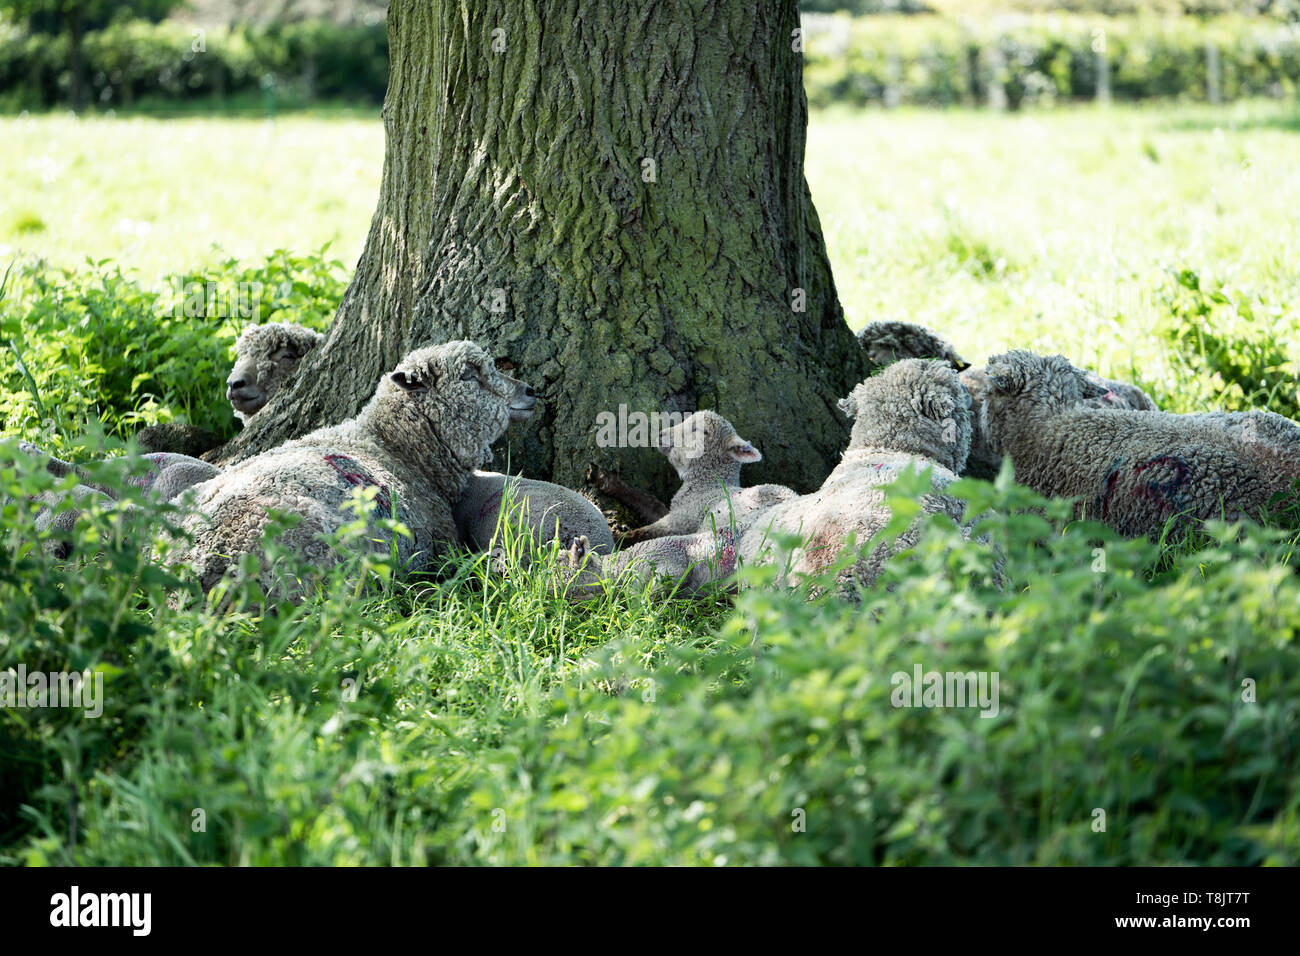 Un rebaño de ovejas de Southdown incluyendo adultos y corderos refugio del sol bajo un árbol grande, REINO UNIDO Foto de stock